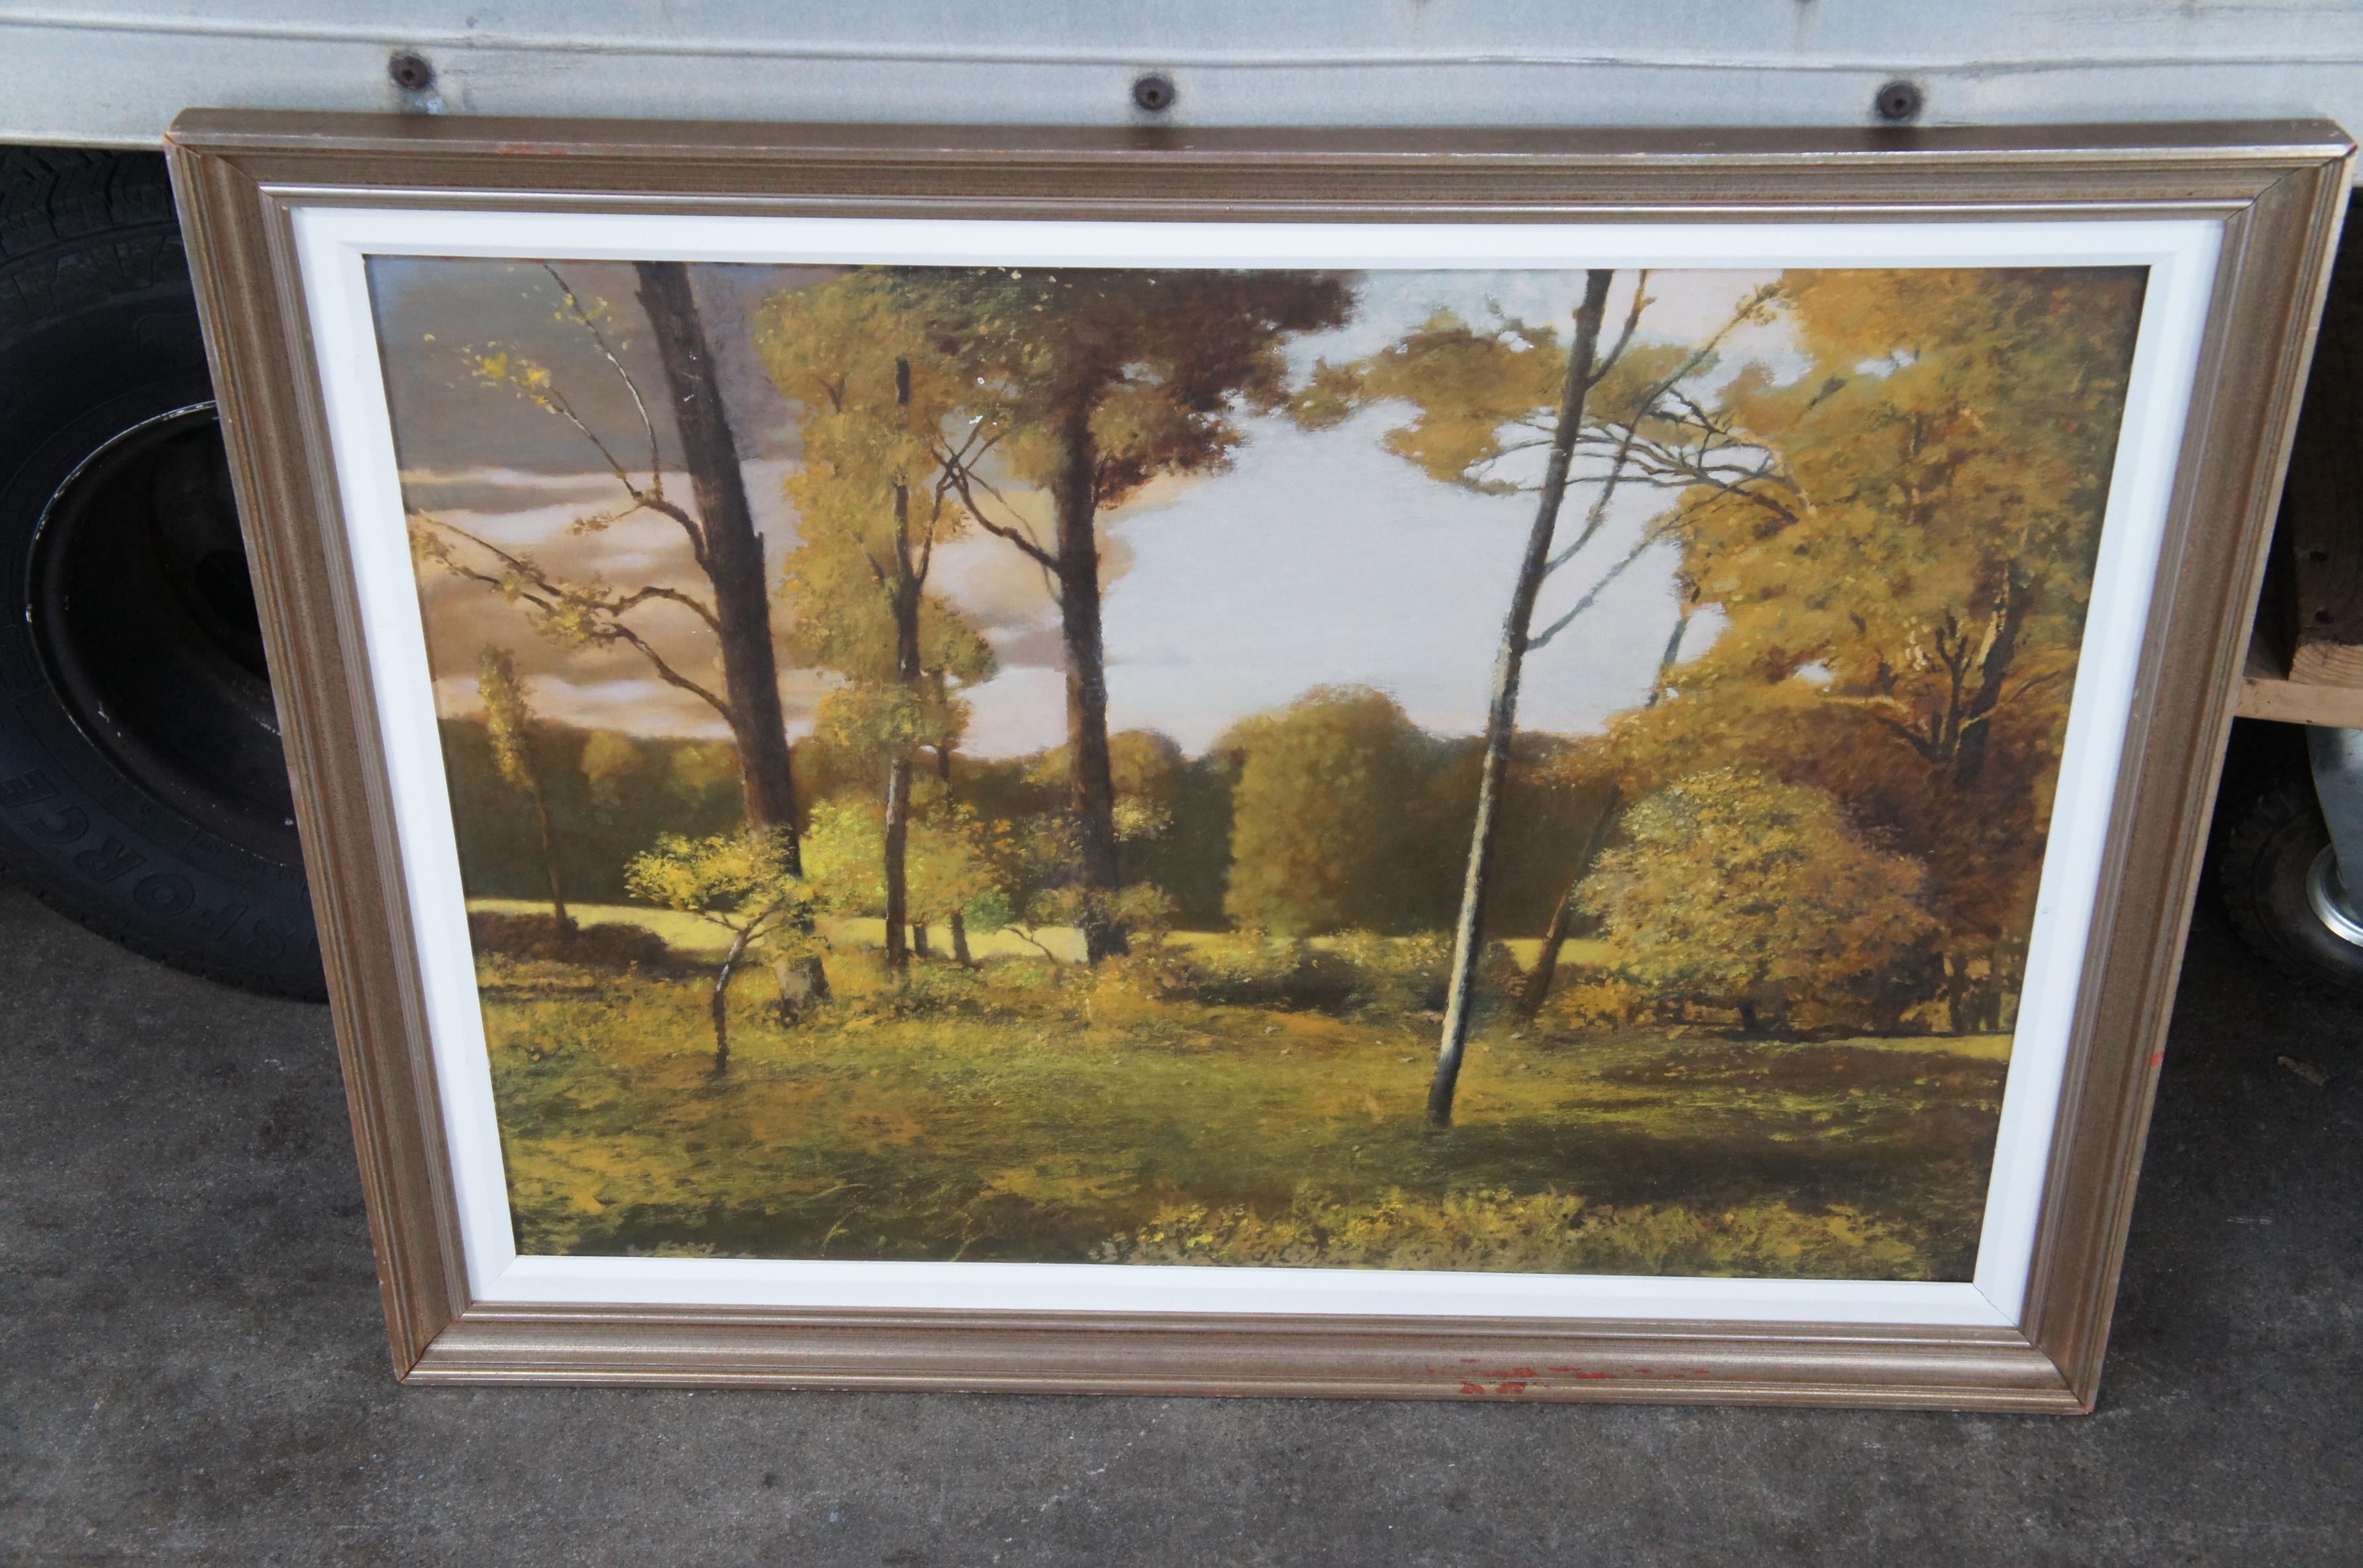 20ième siècle Ronald E. Renmark - Peinture à l'huile sur toile - Paysage de forêt avec arbres - 46